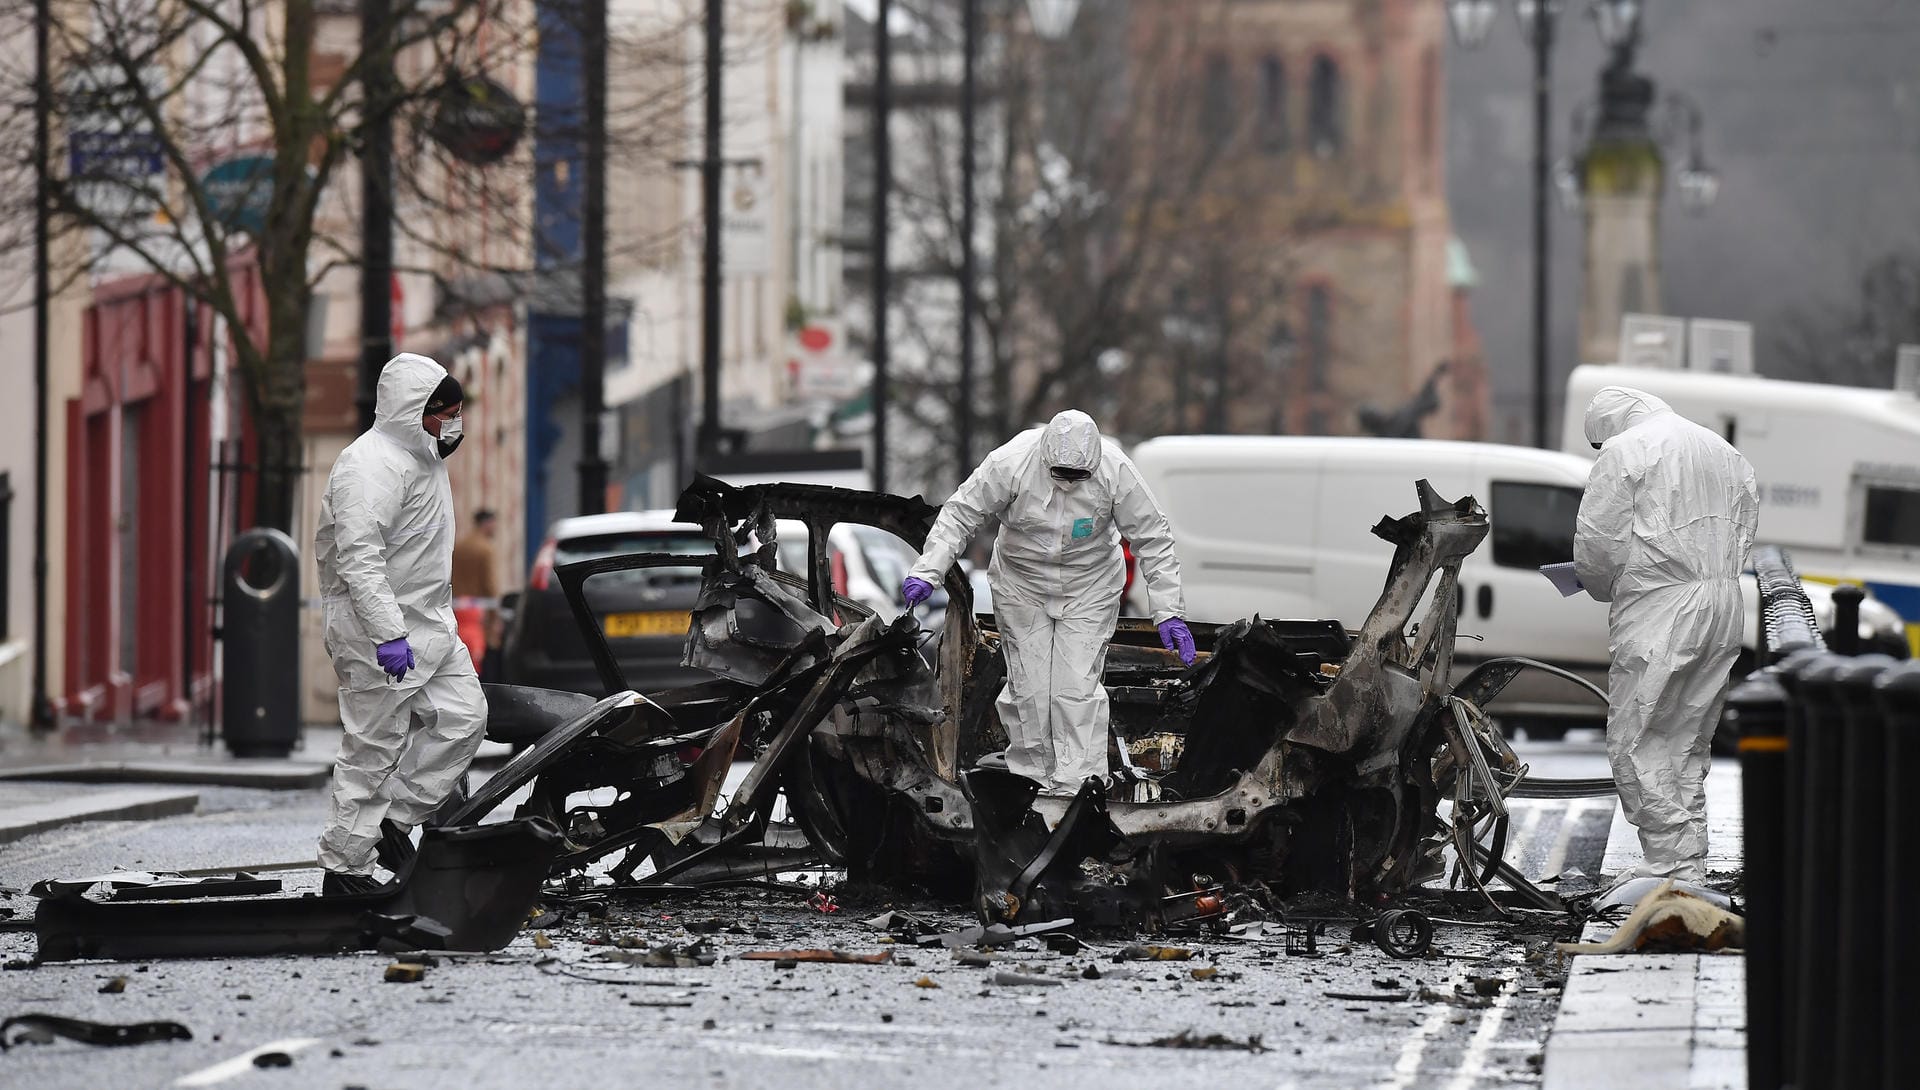 Autobombe im Januar 2019 in Londonderry.